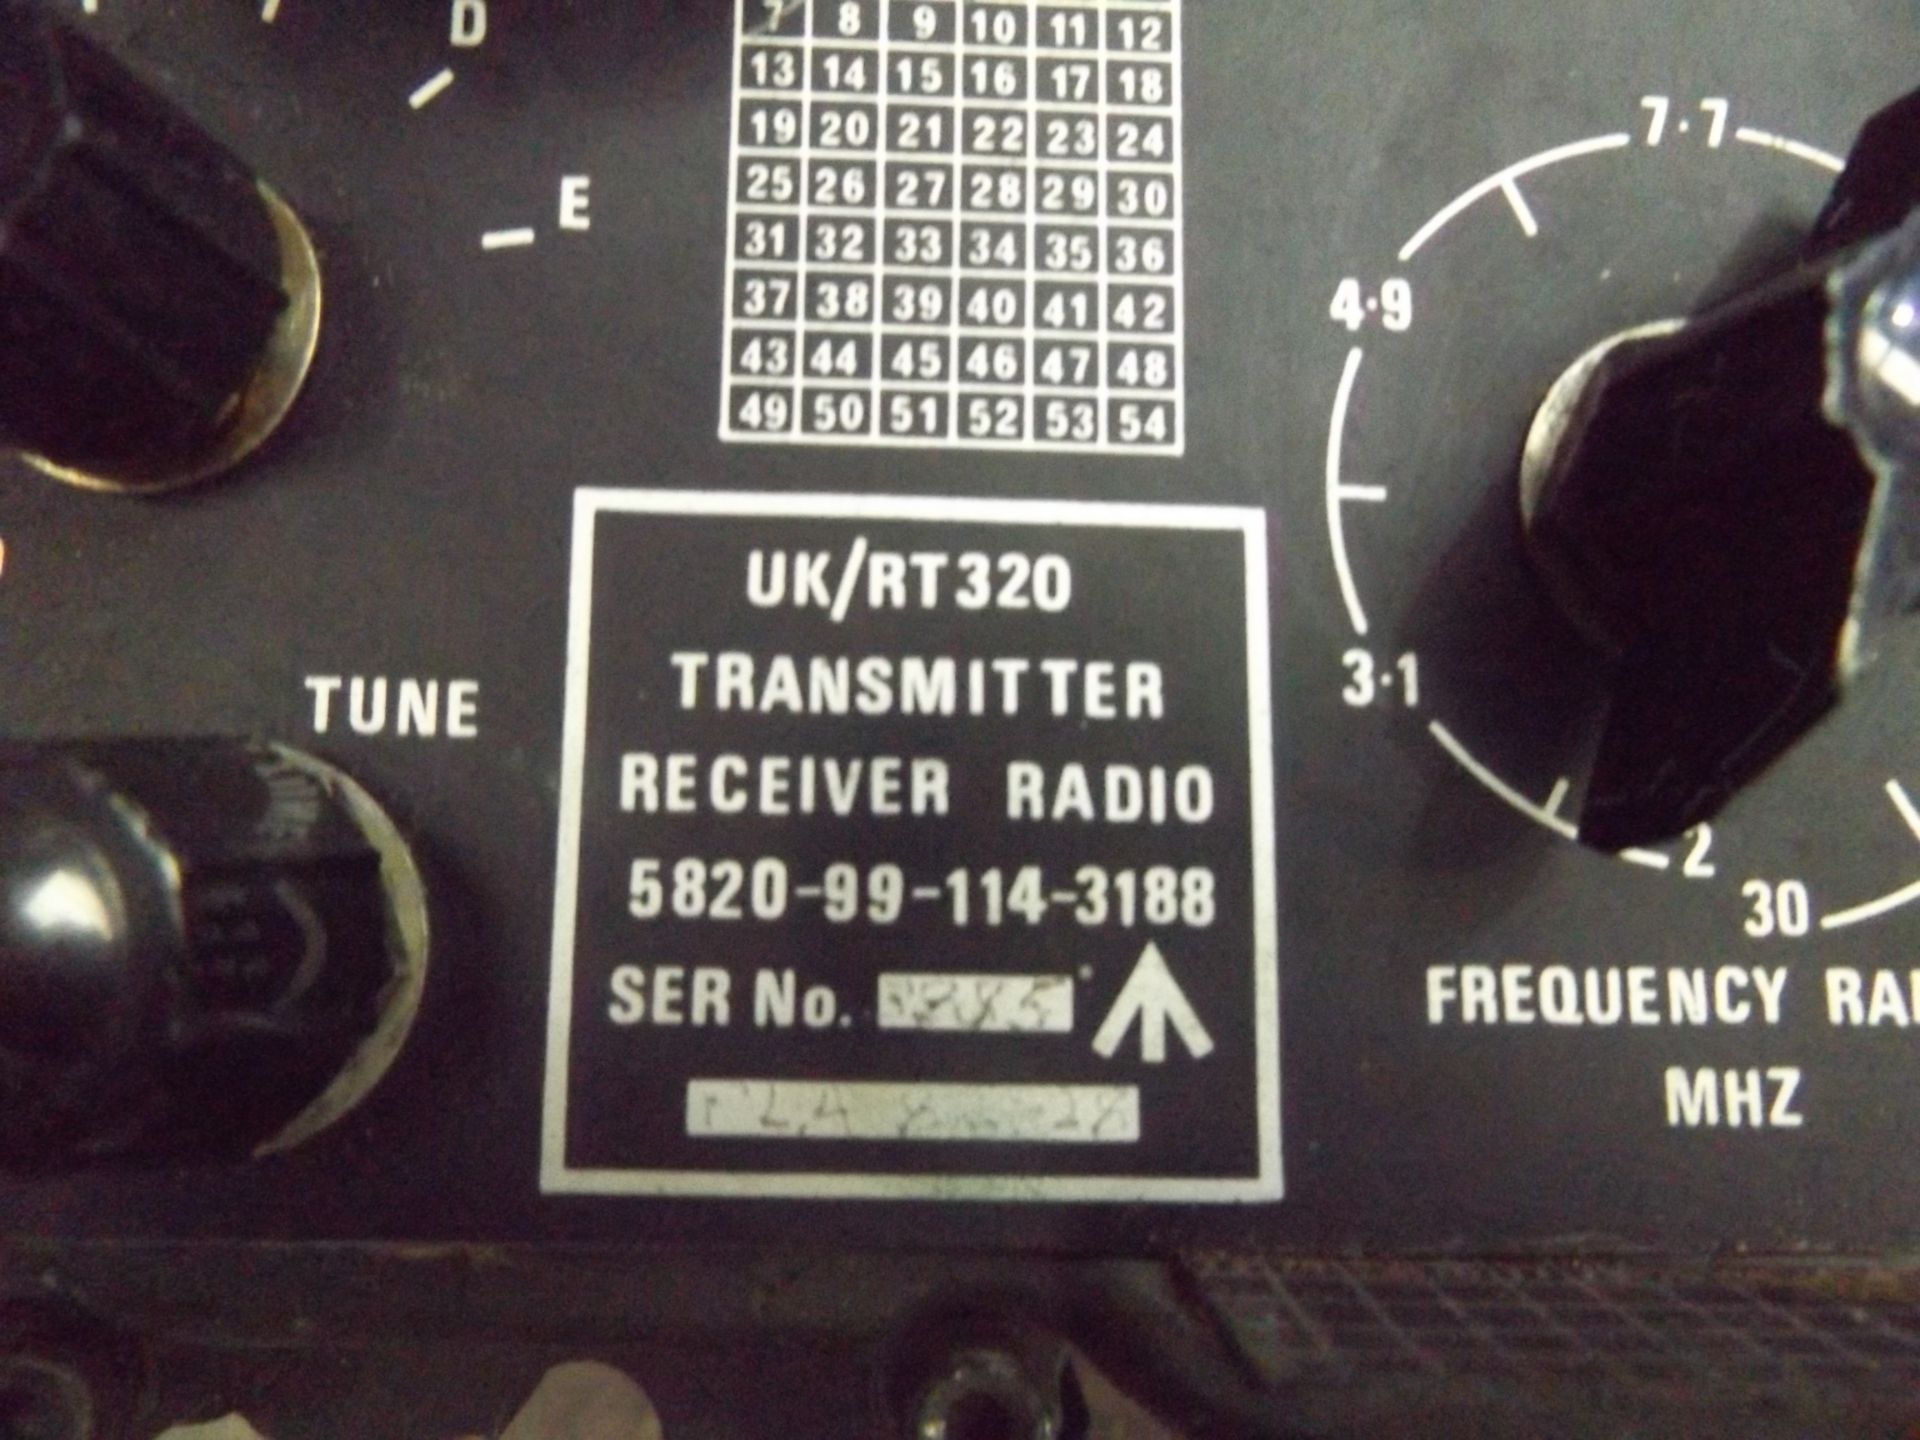 2 x RT320 Transmiter Receiver Radios - Image 3 of 3